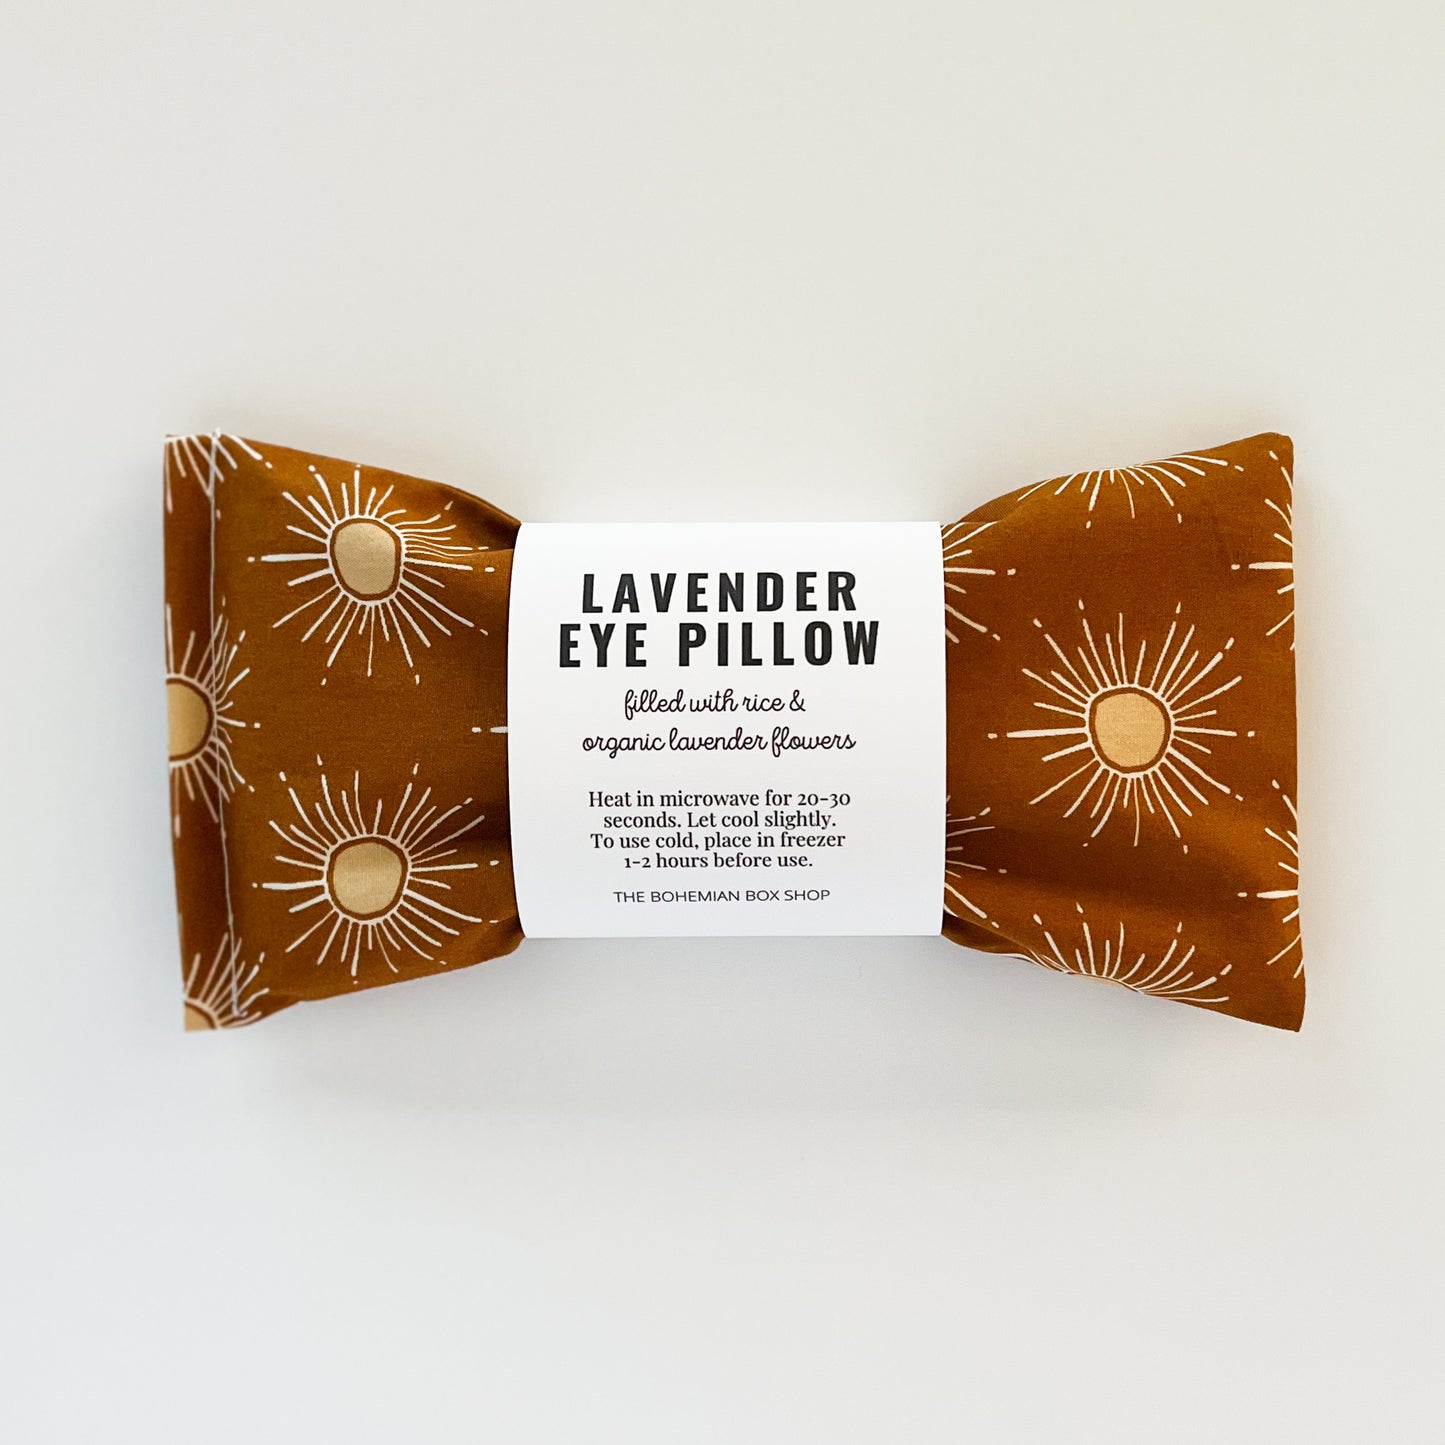 Lavender Eye Pillow - Aromatherapy Eye Pillow - Weighted Eye Mask